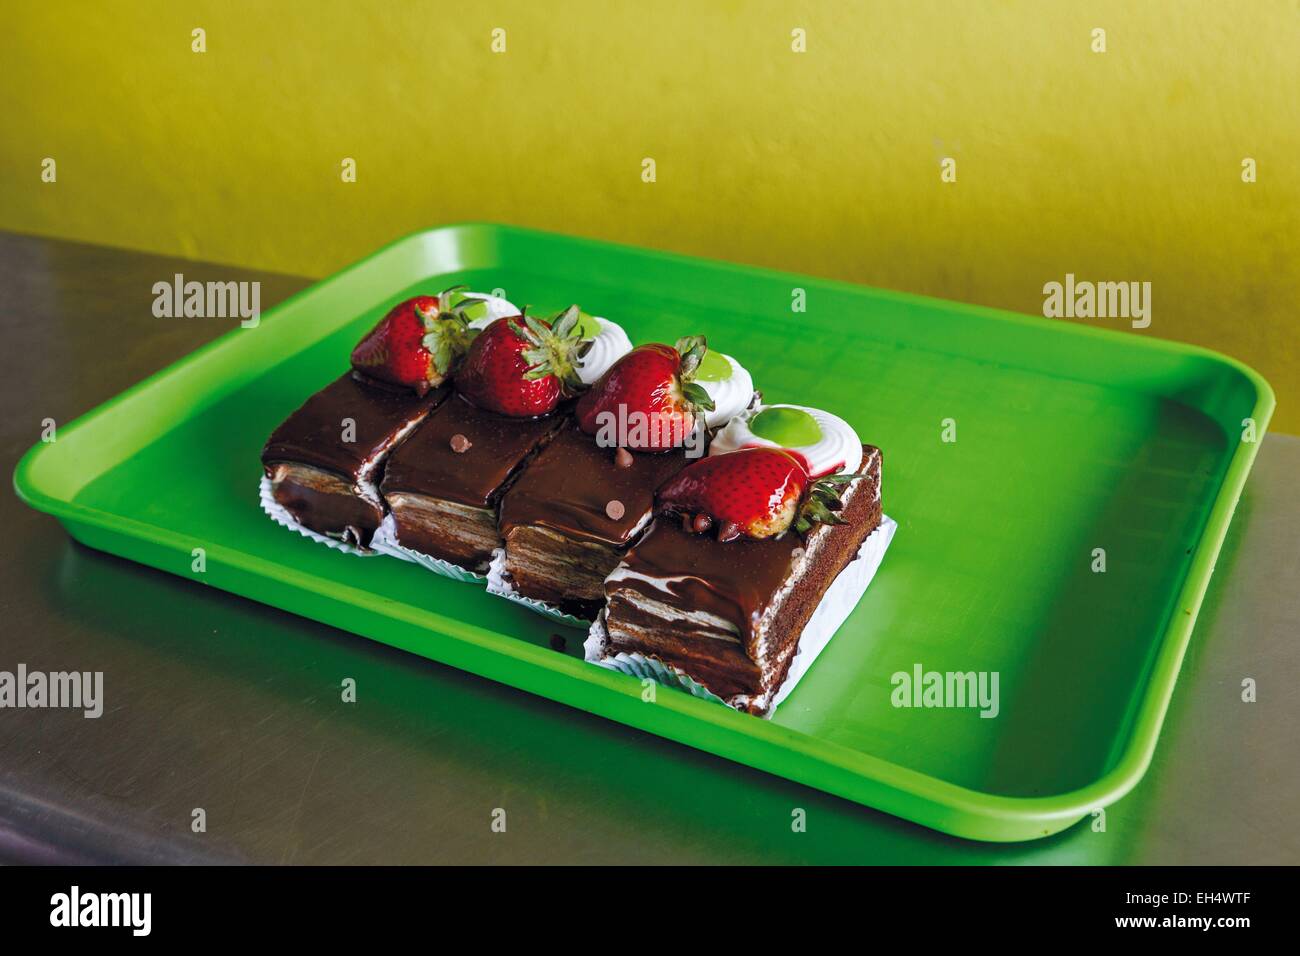 Ecuador, Latacunga, cake tray in an Ecuadorian pastry Stock Photo